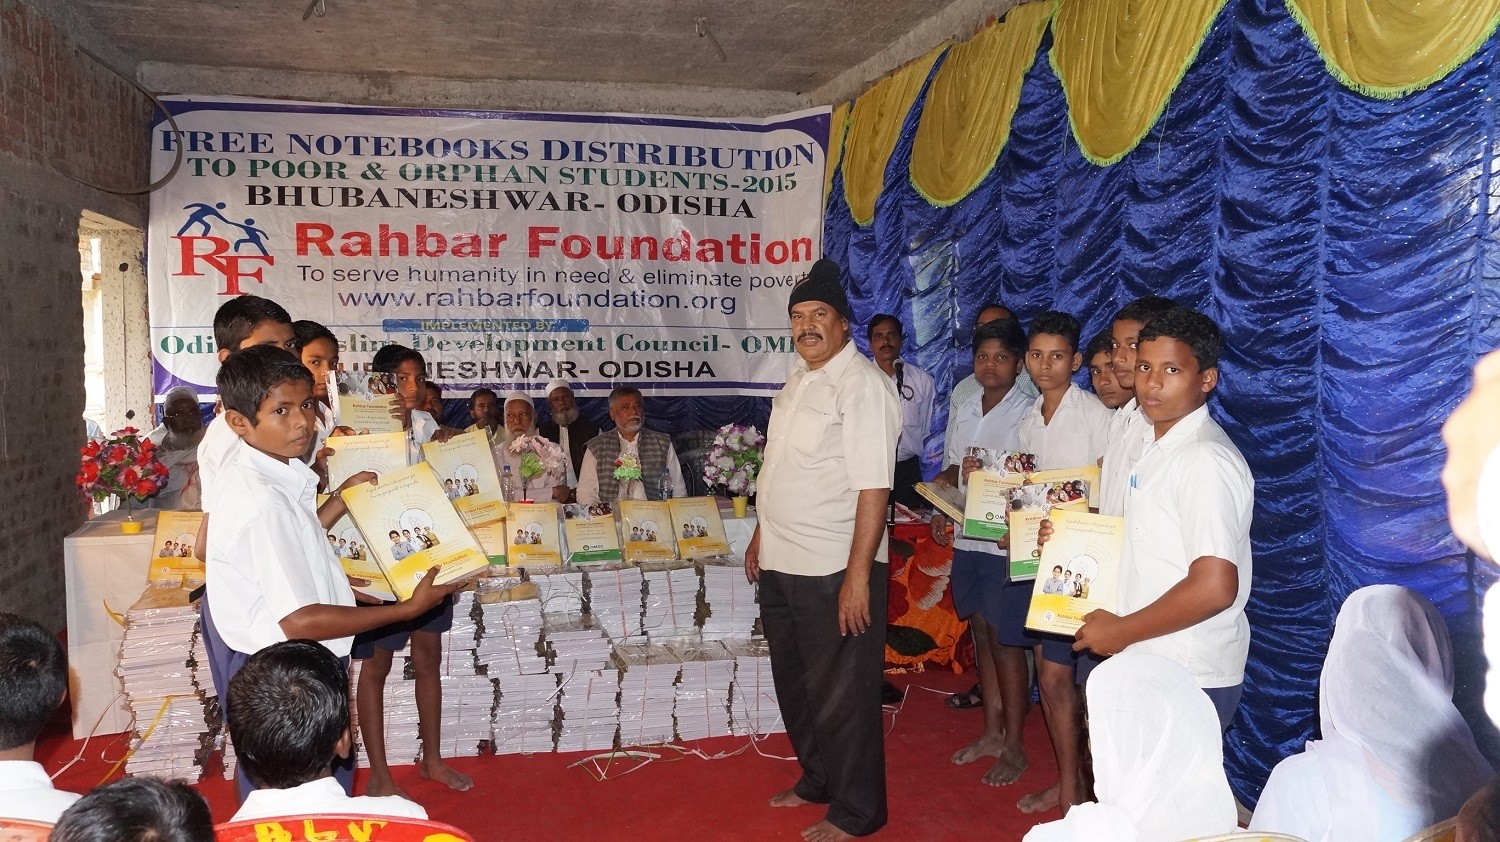 Free Notebooks distribution at Bhubaneshwar, Odisha